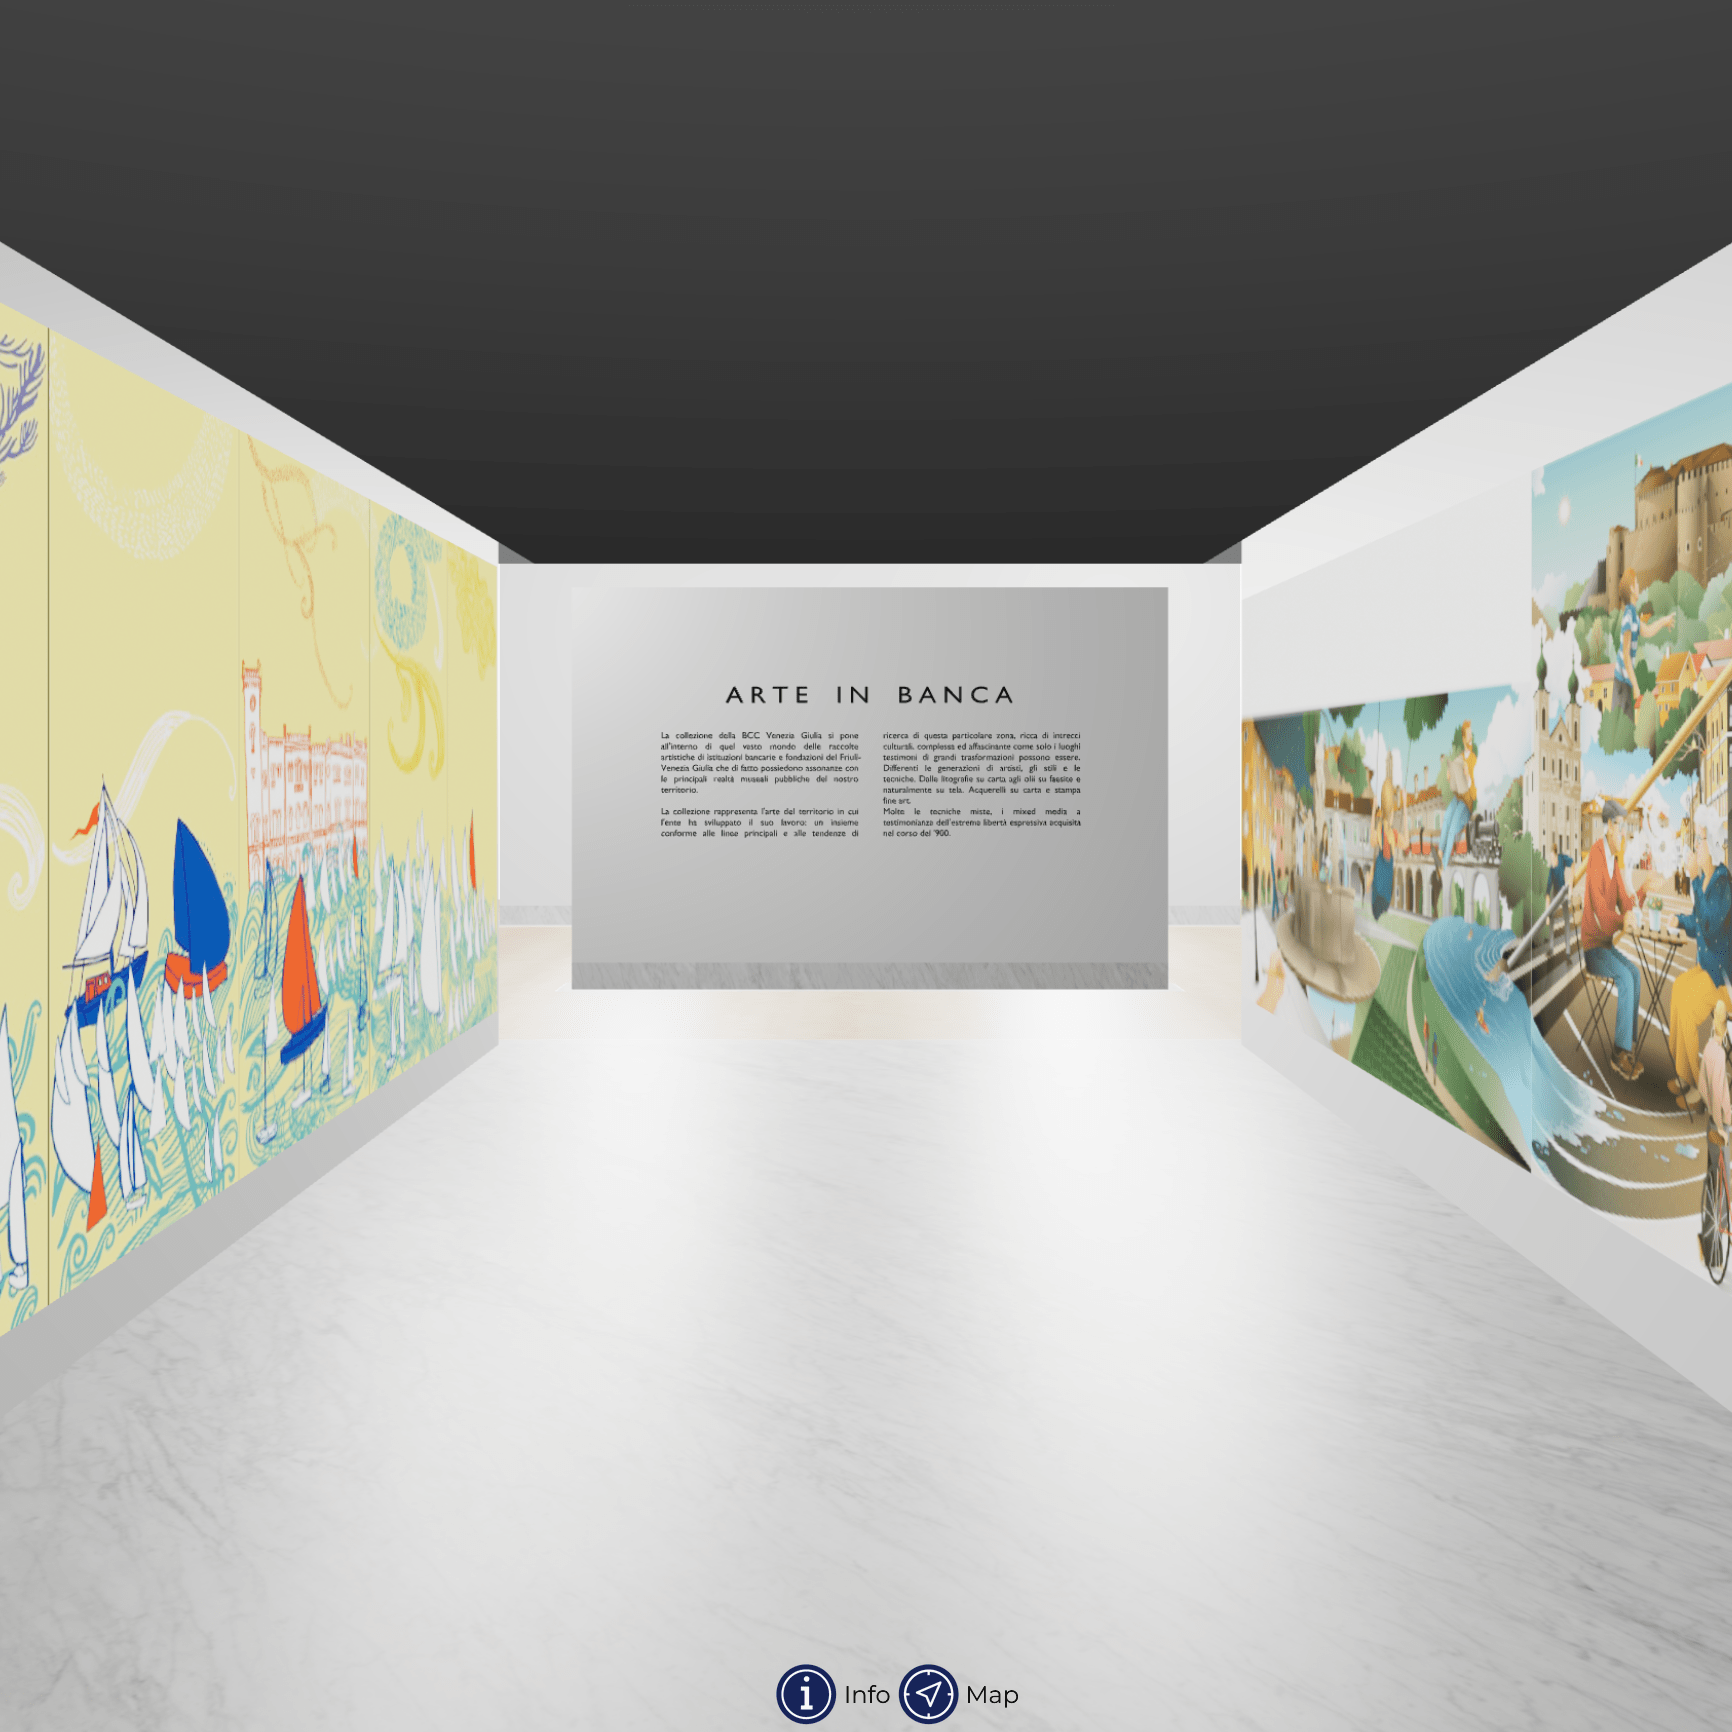 Ingresso della mostra virtuale Arteinbanca, in cui sono visibili un corridoio e due pannelli pittorici